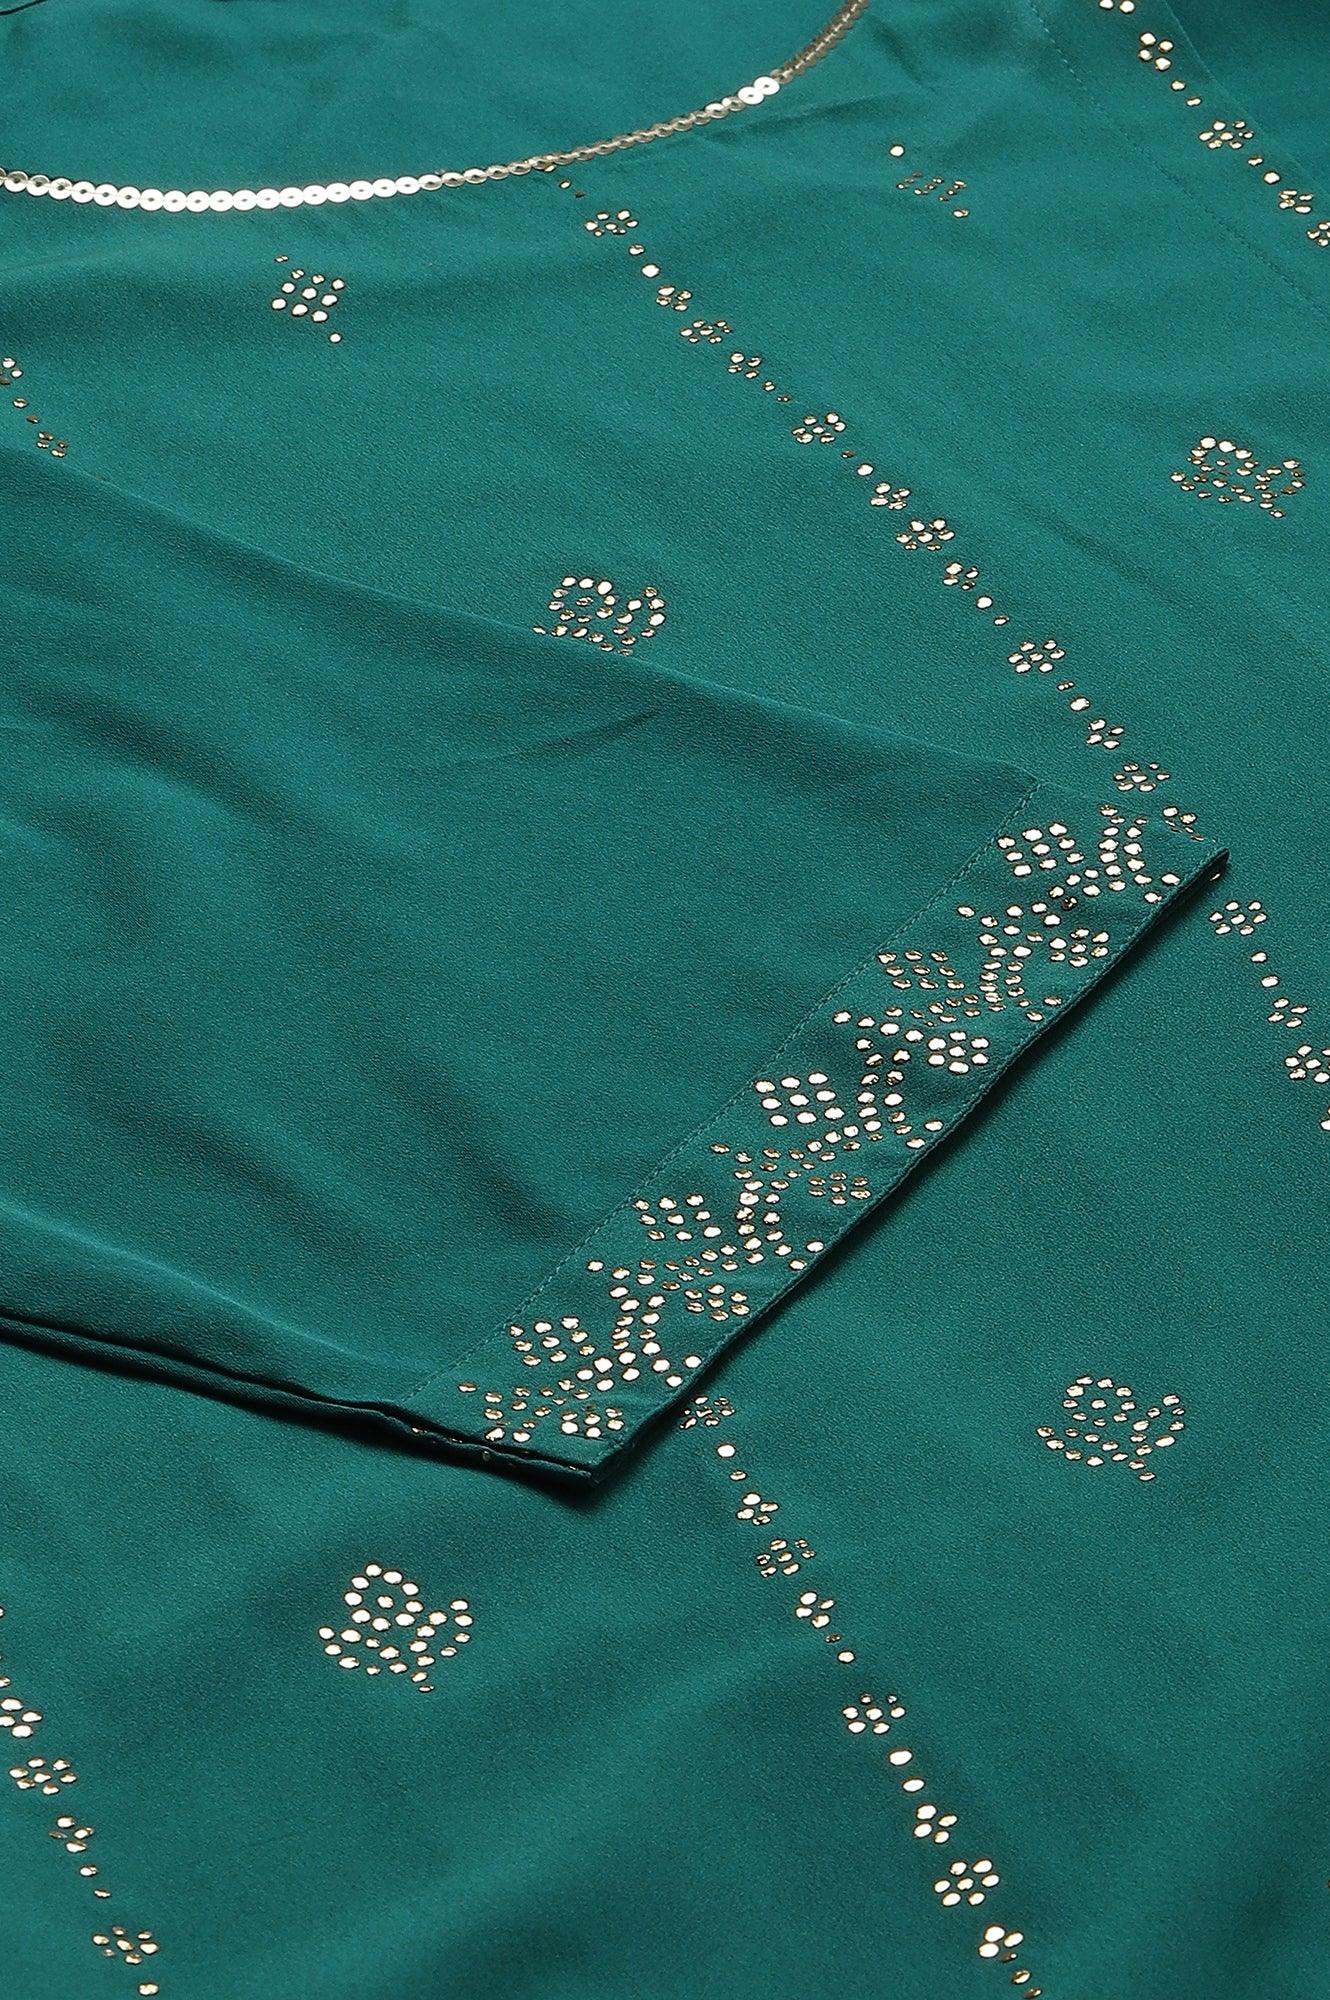 Green Mukaish Printed Layered Plus Size kurta - wforwoman